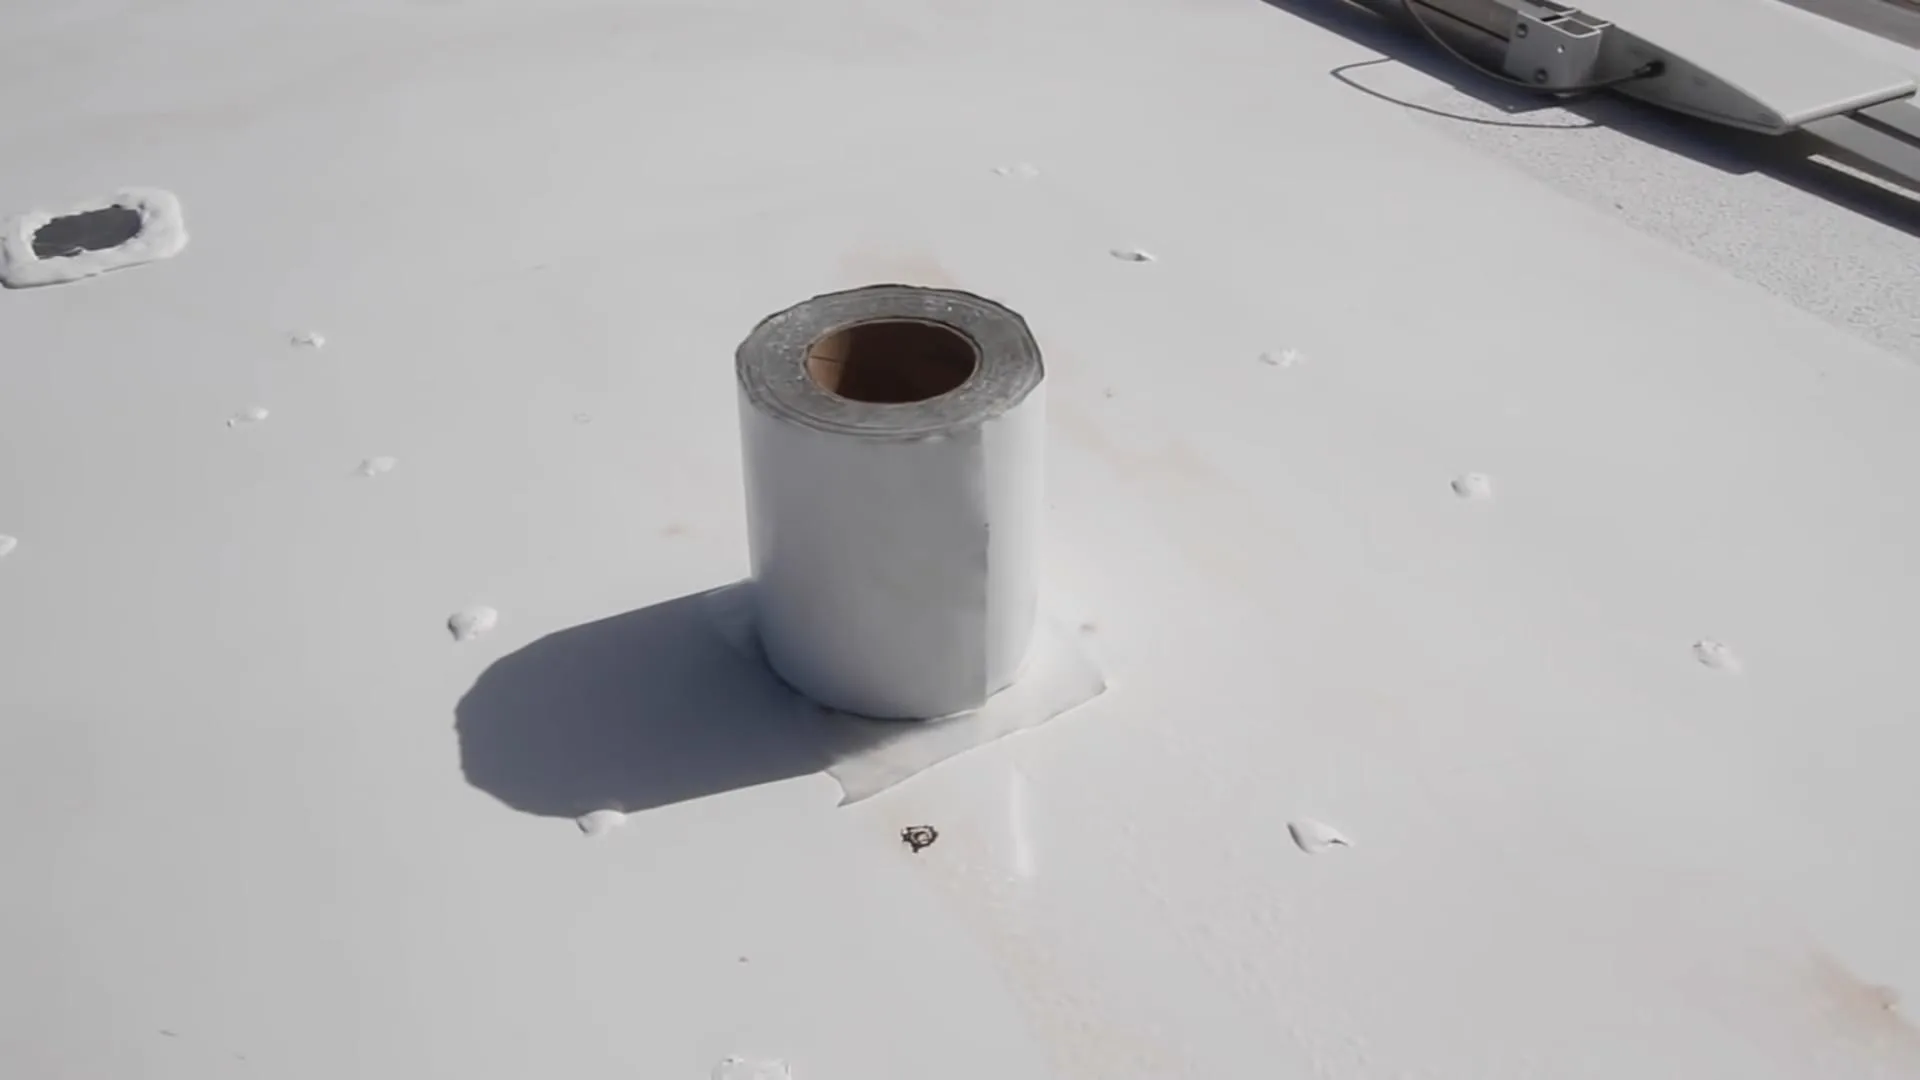 A roll of EternaBond tape